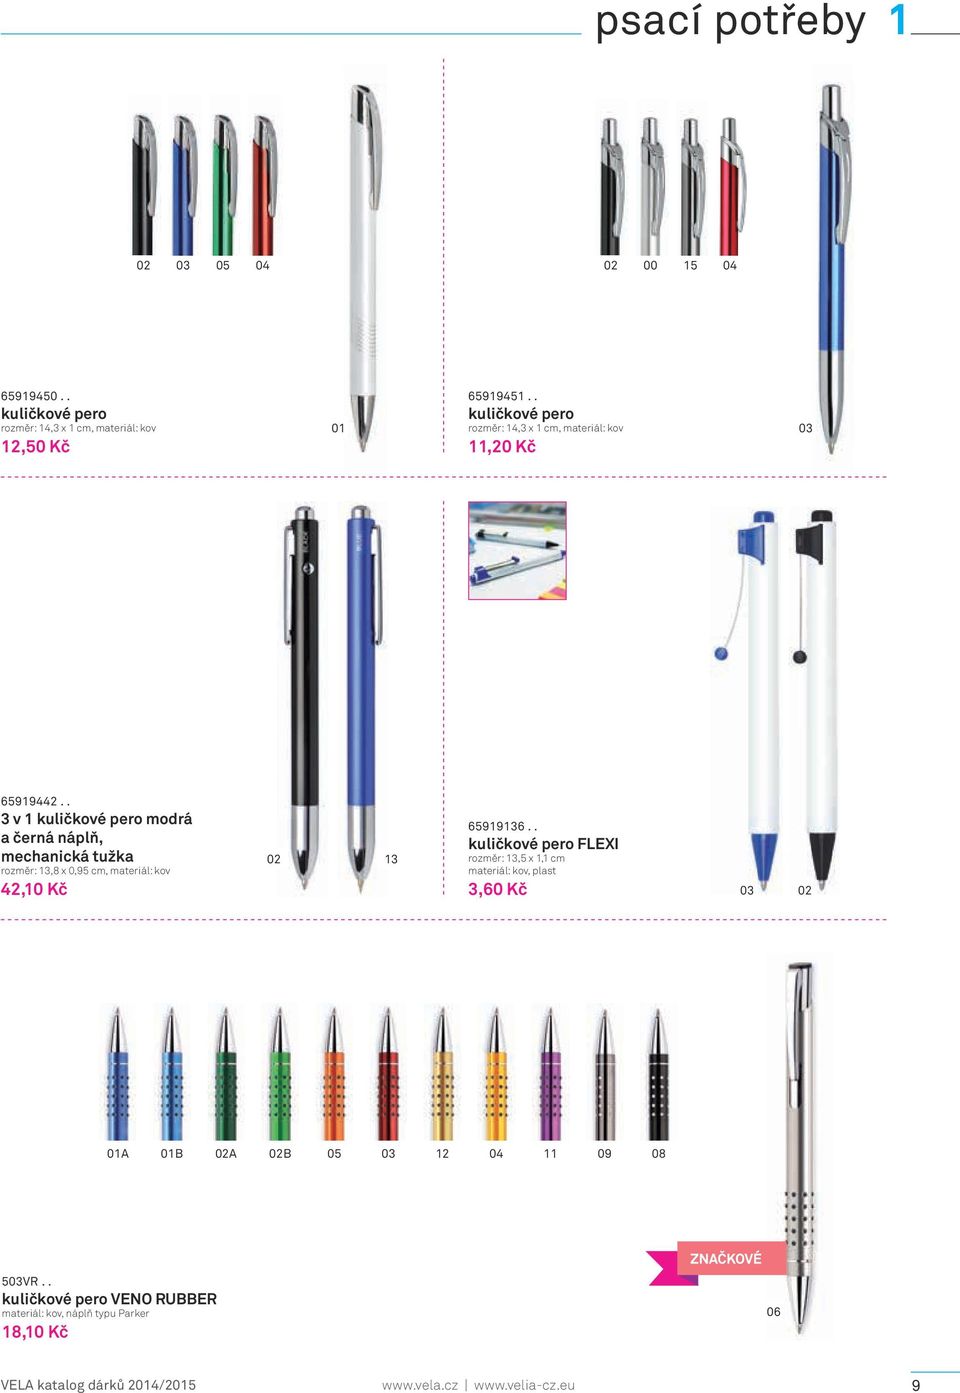 . 3 v 1 kuličkové pero modrá a černá náplň, mechanická tužka rozměr: 13,8 x 0,95 cm, materiál: kov 42,10 Kč 13 65919136.